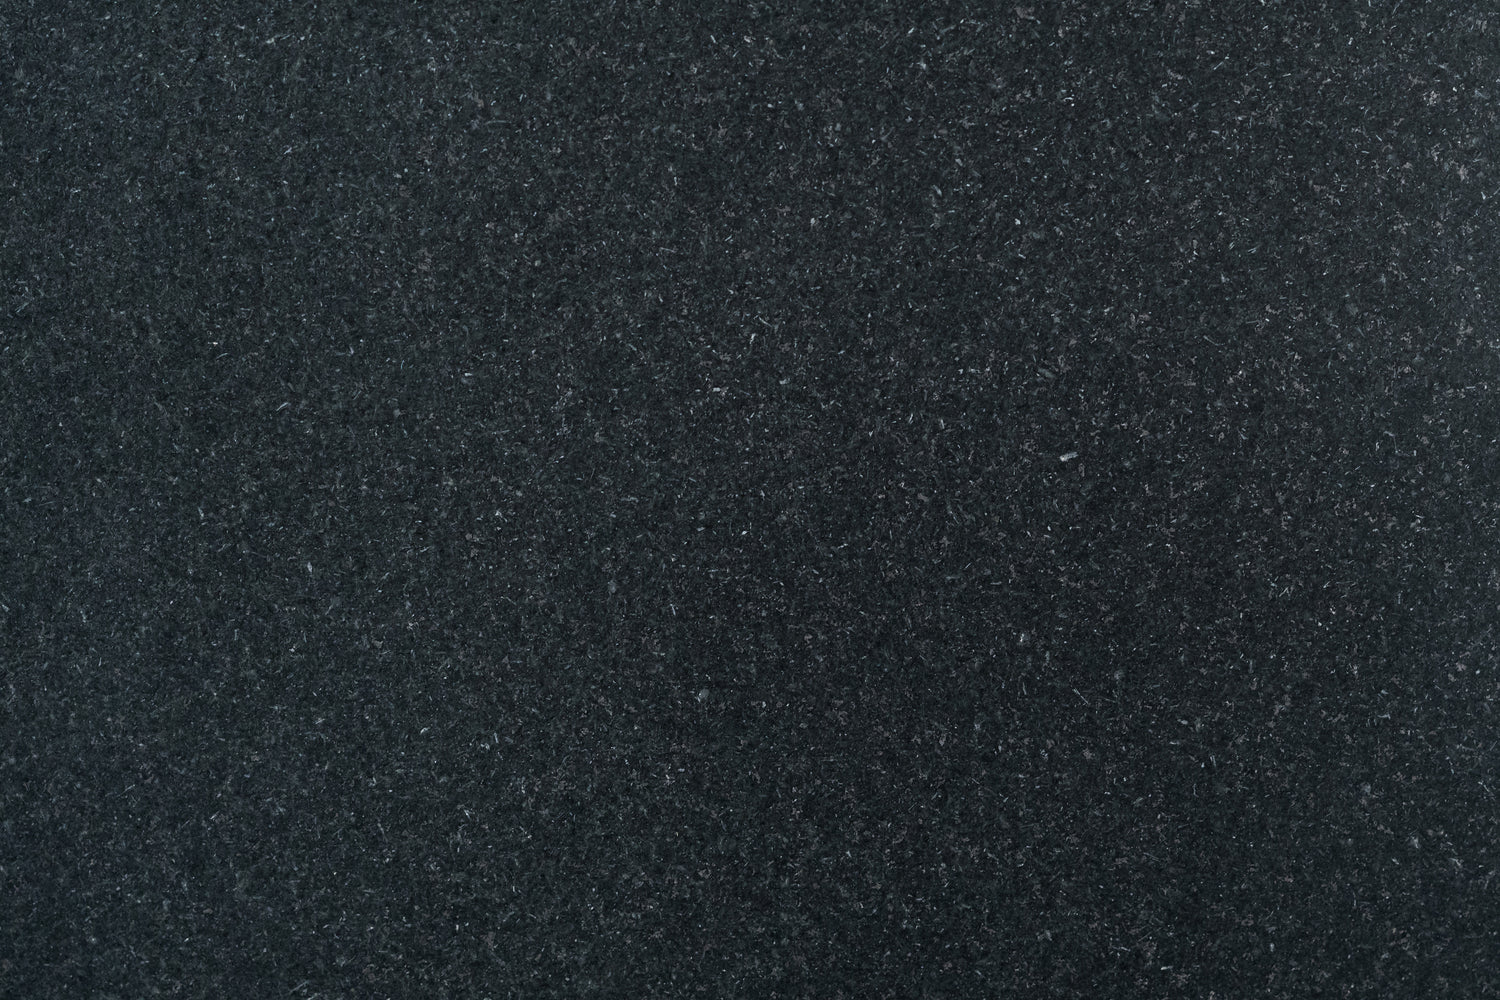 Full Tile Sample - Absolute Black Granite Tile - 18" x 18" x 1/2" Honed